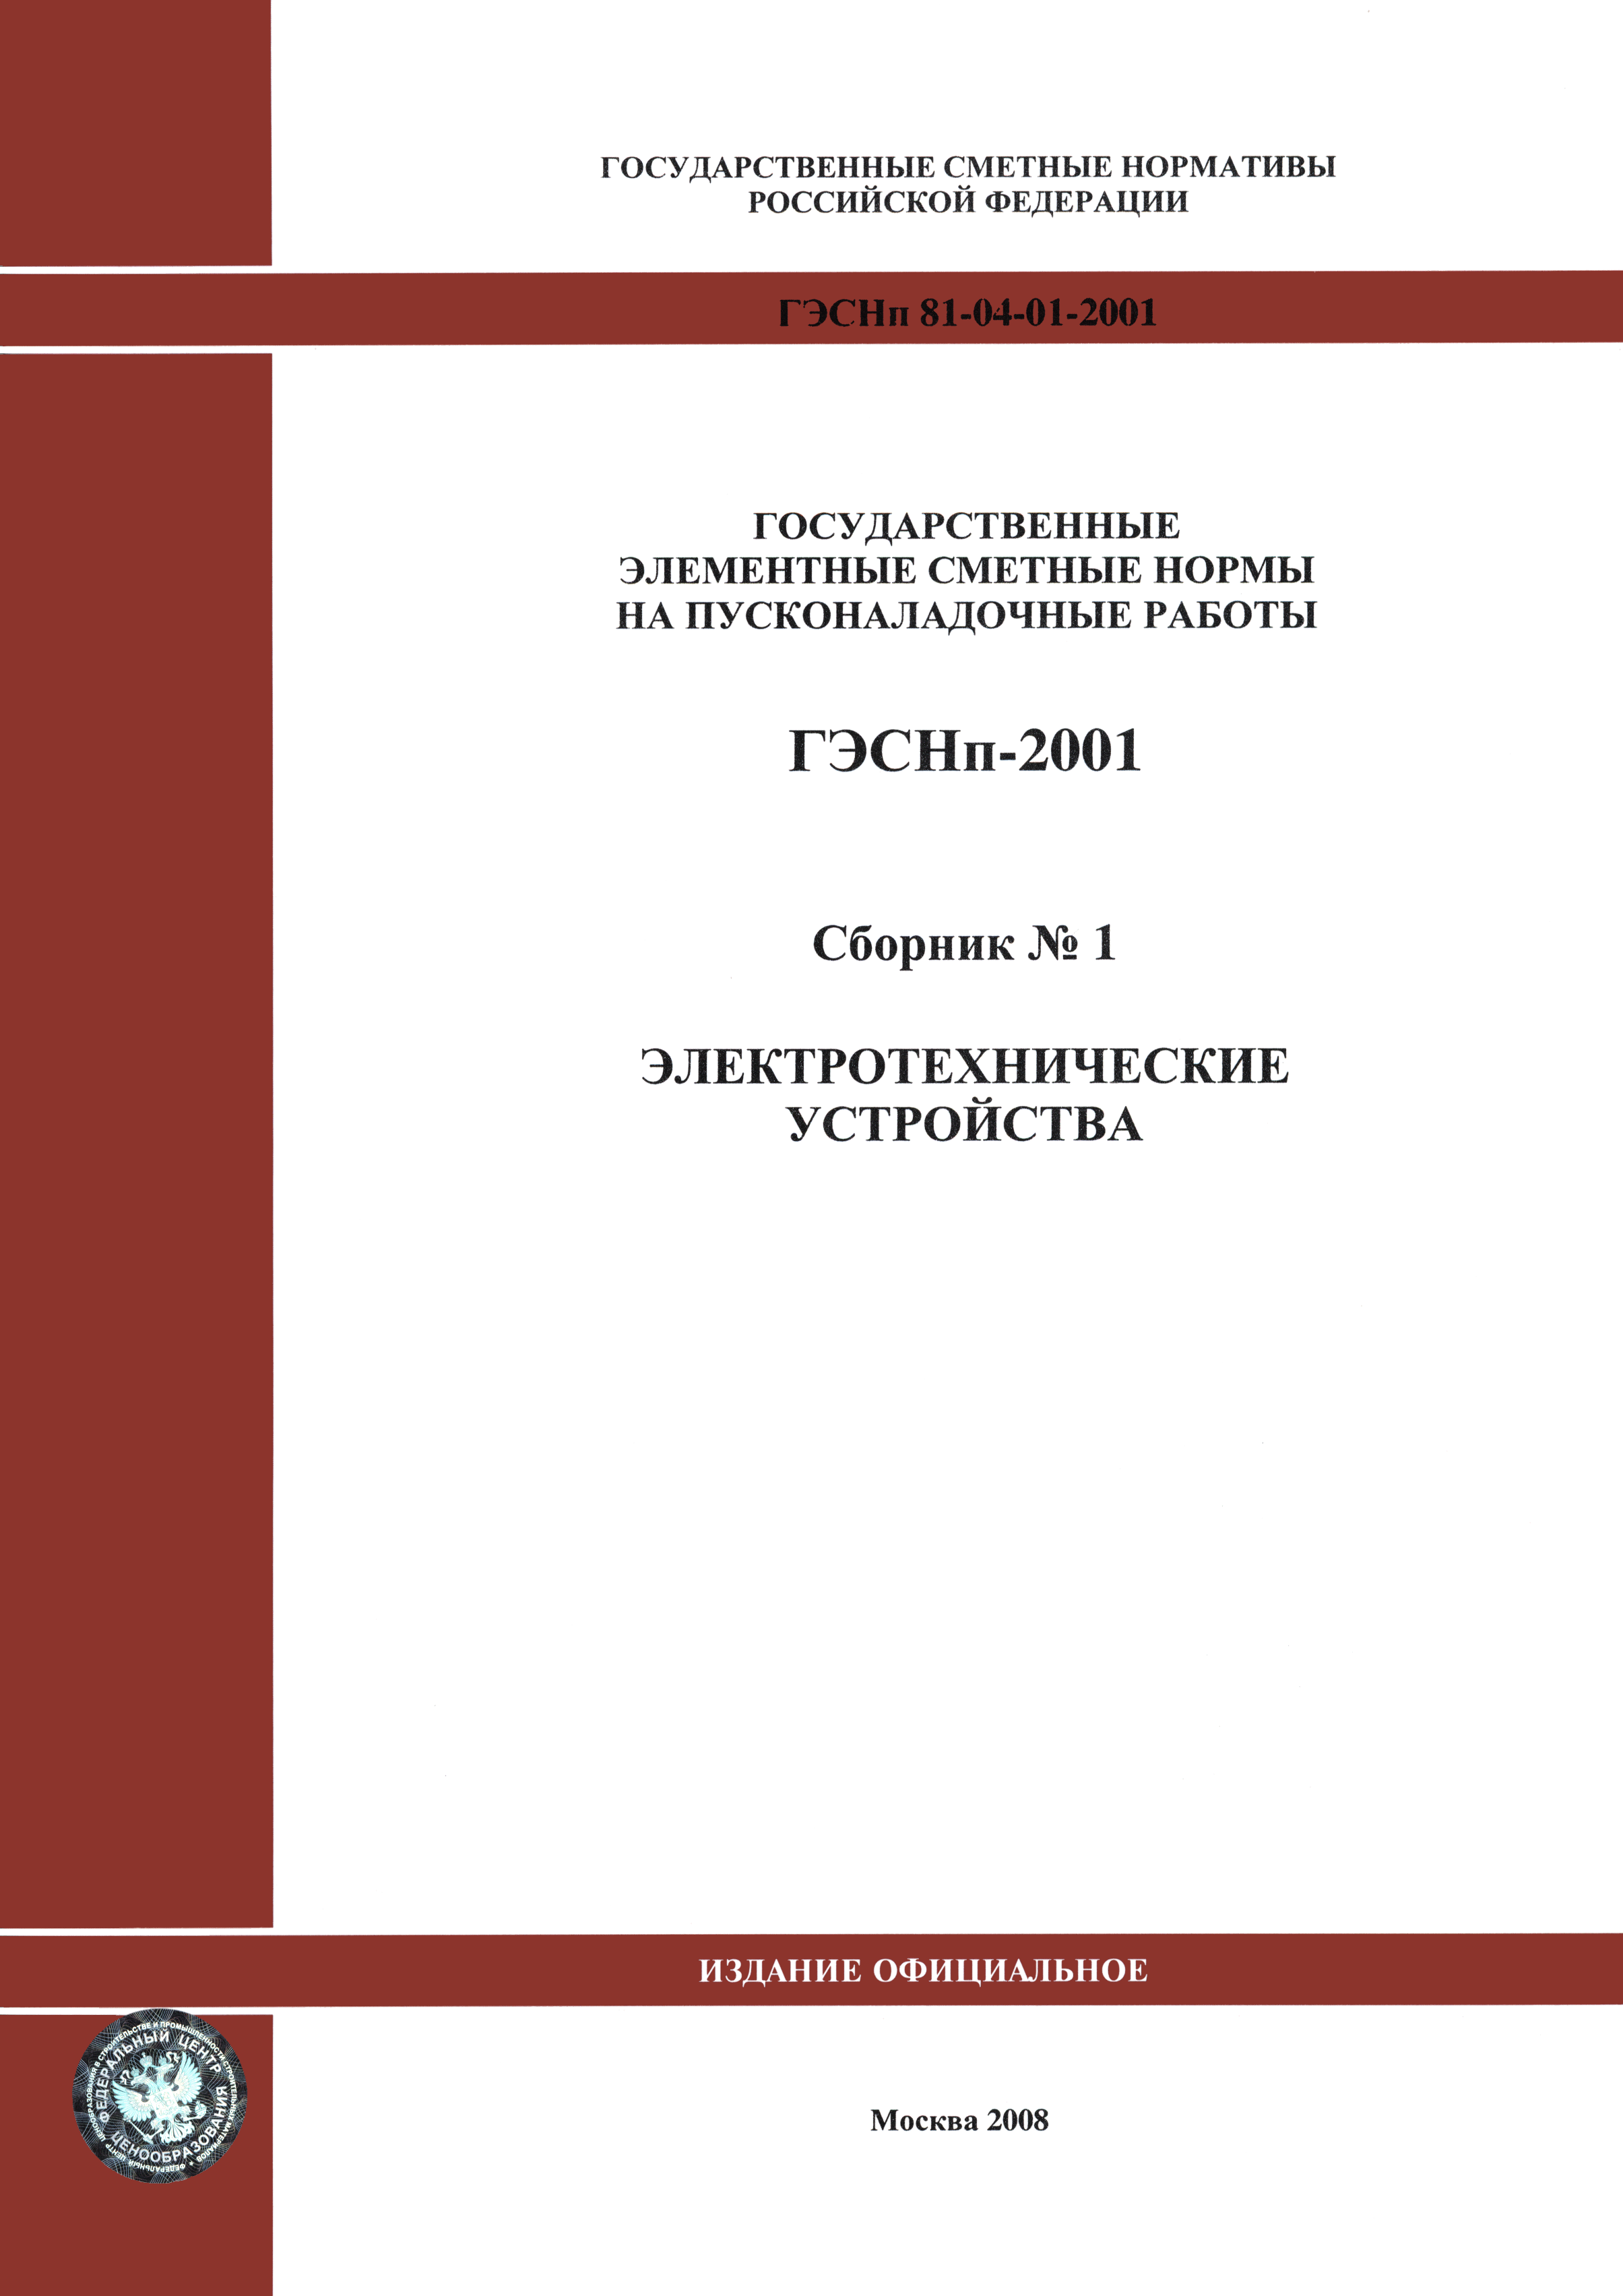 ГЭСНп 2001-01